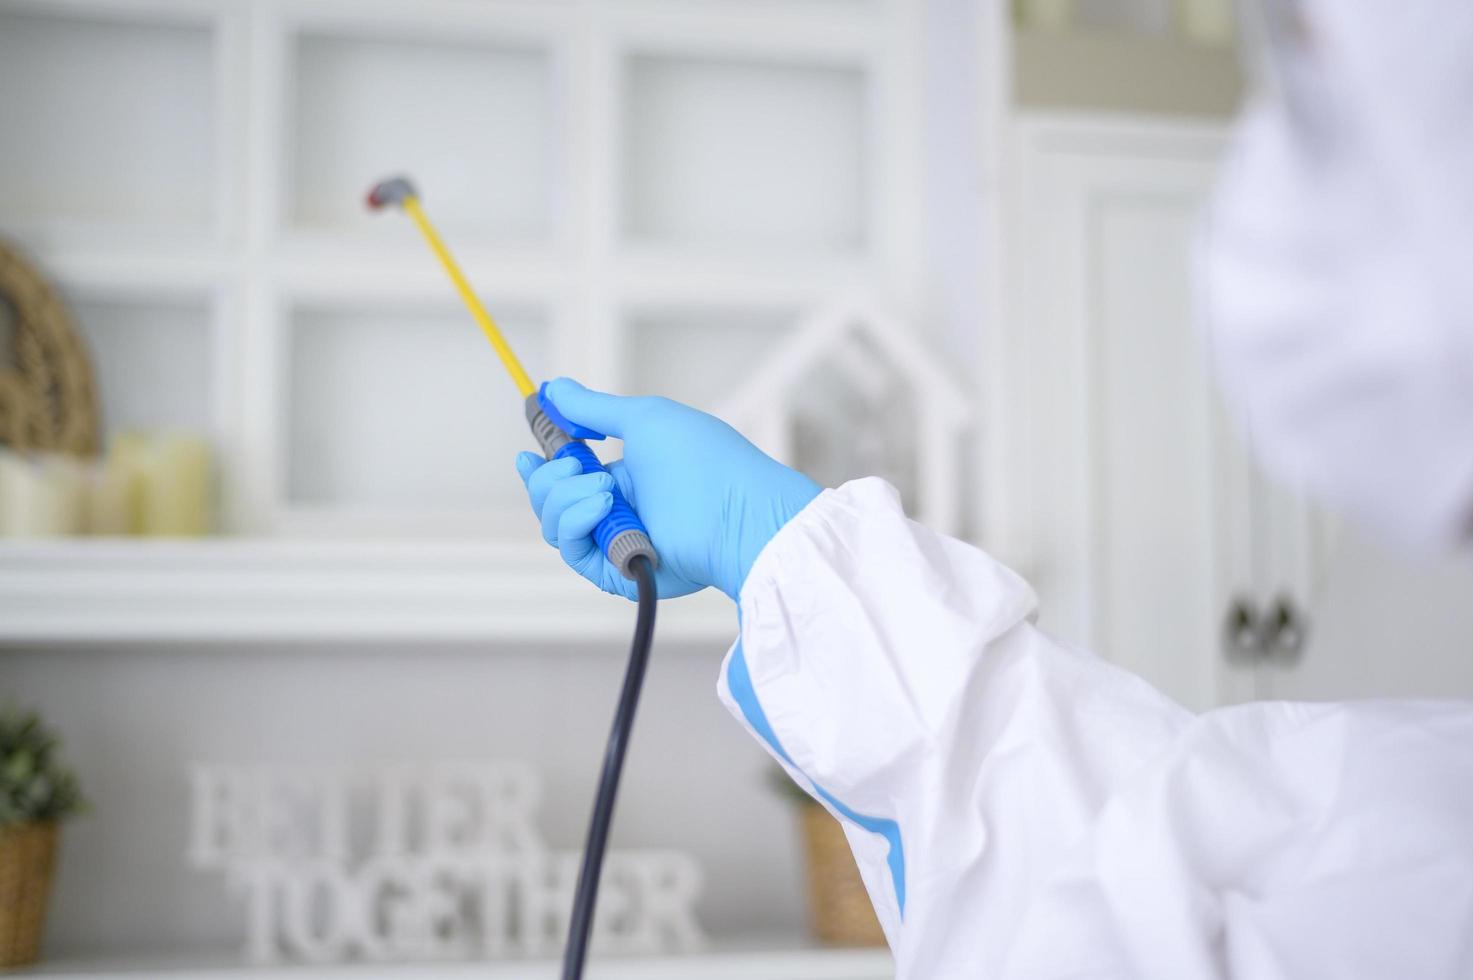 Ein medizinisches Personal im PSA-Anzug verwendet Desinfektionsspray im Wohnzimmer, Covid-19-Schutz, Desinfektionskonzept. foto